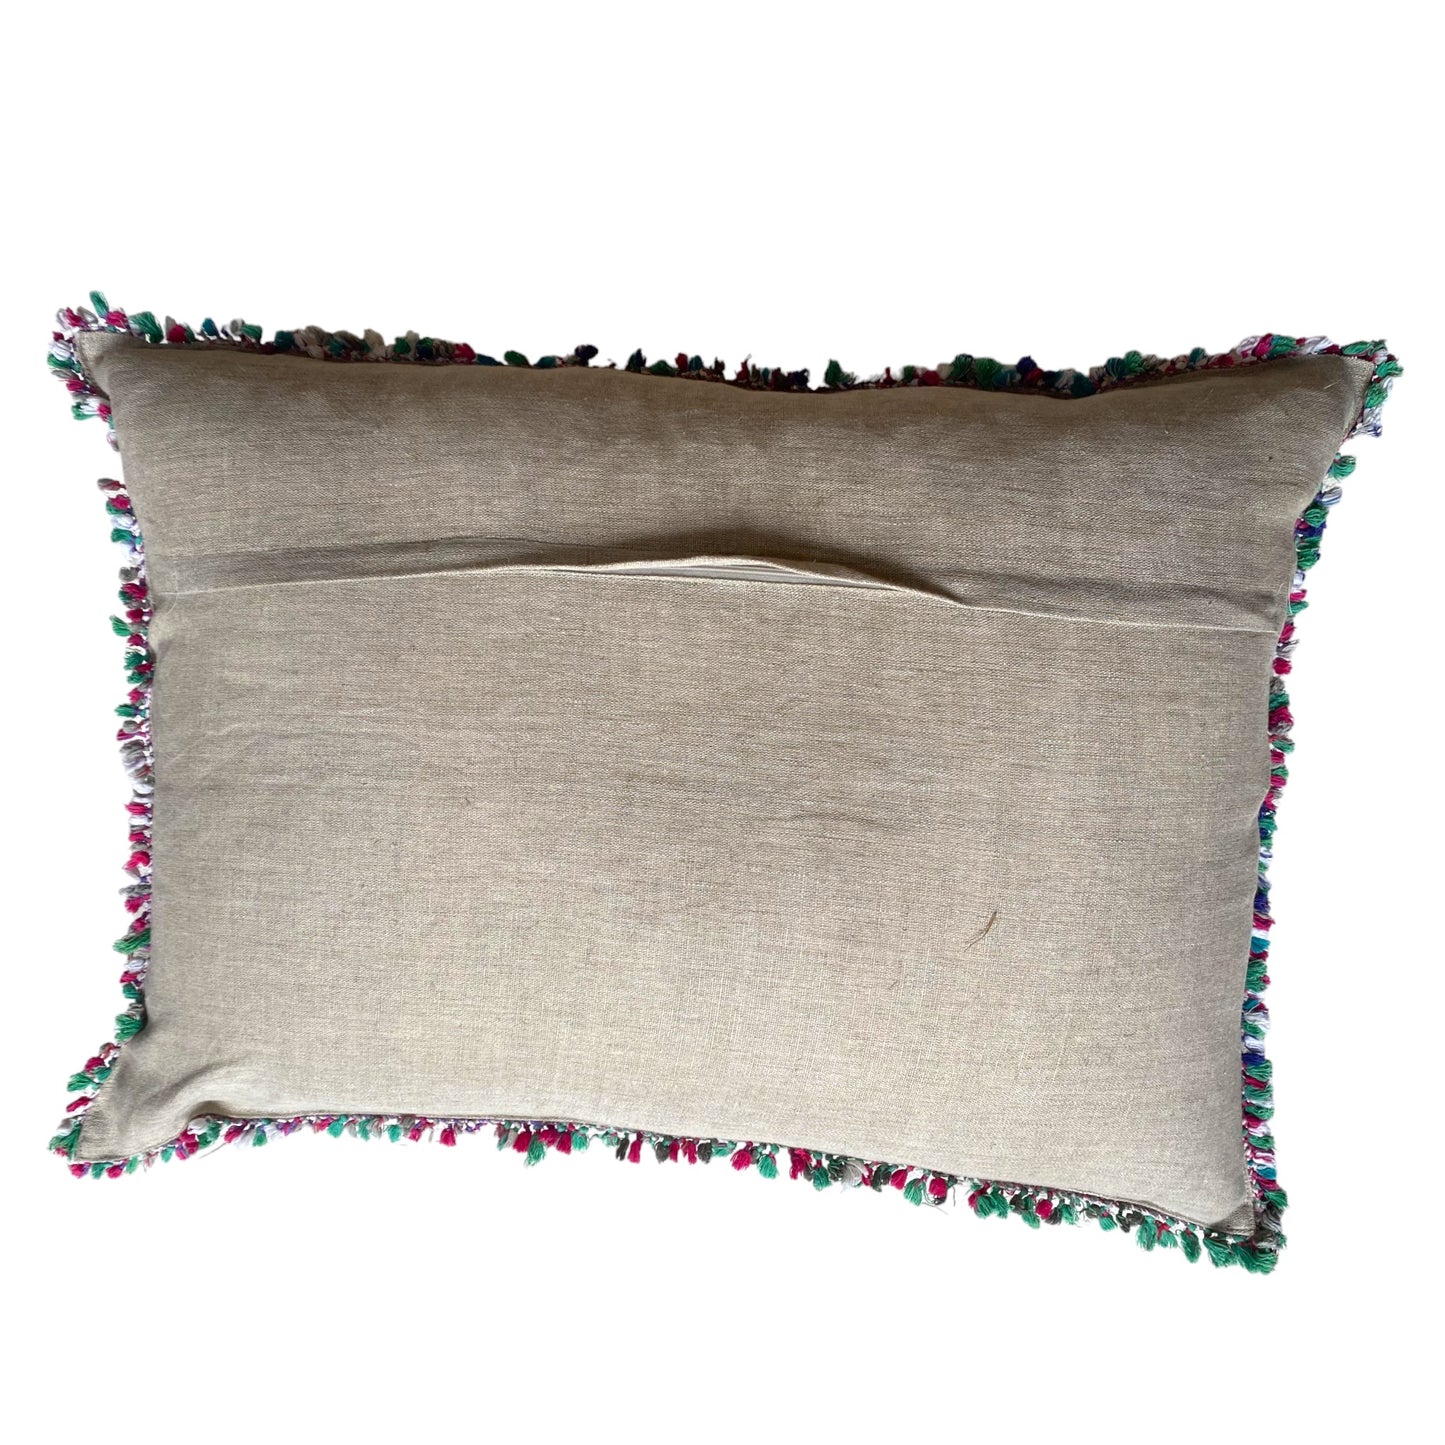 Reverse of nakshi cushion with fringe